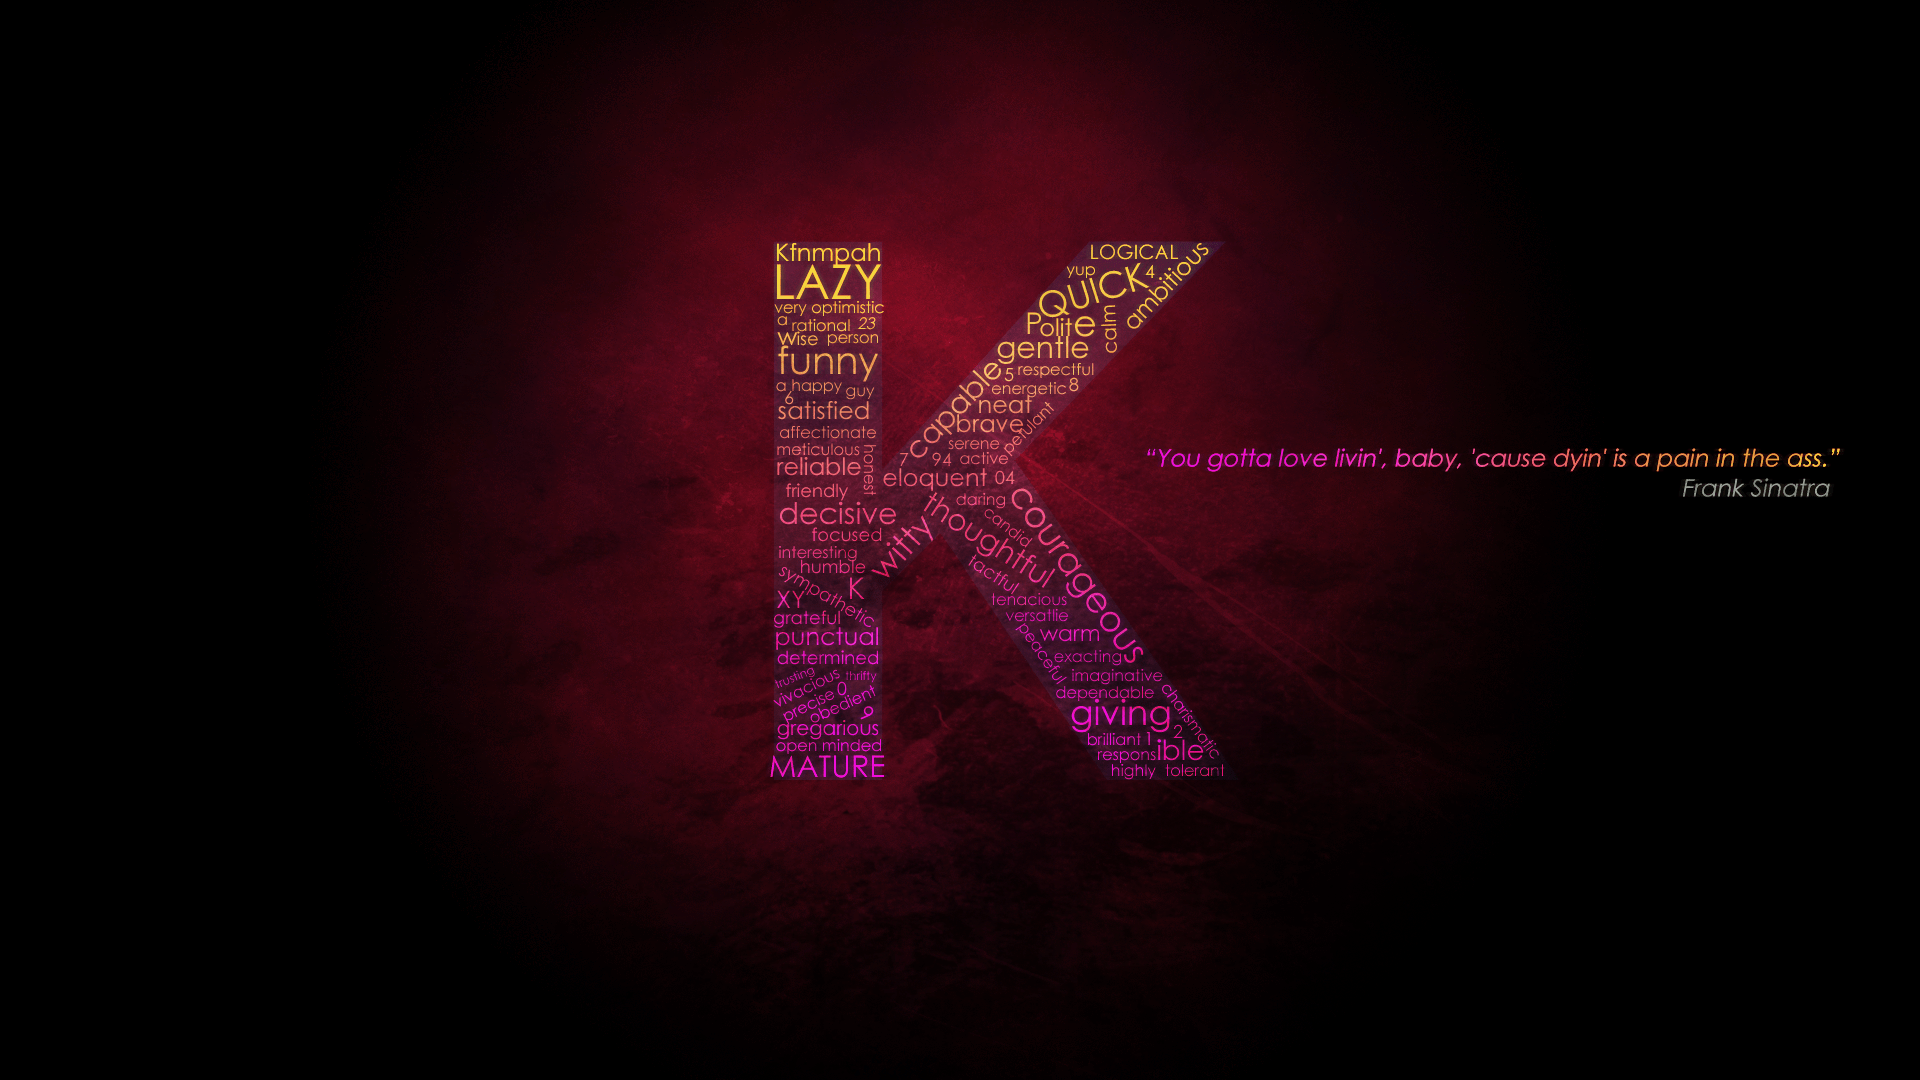 K letter HD wallpapers | Pxfuel